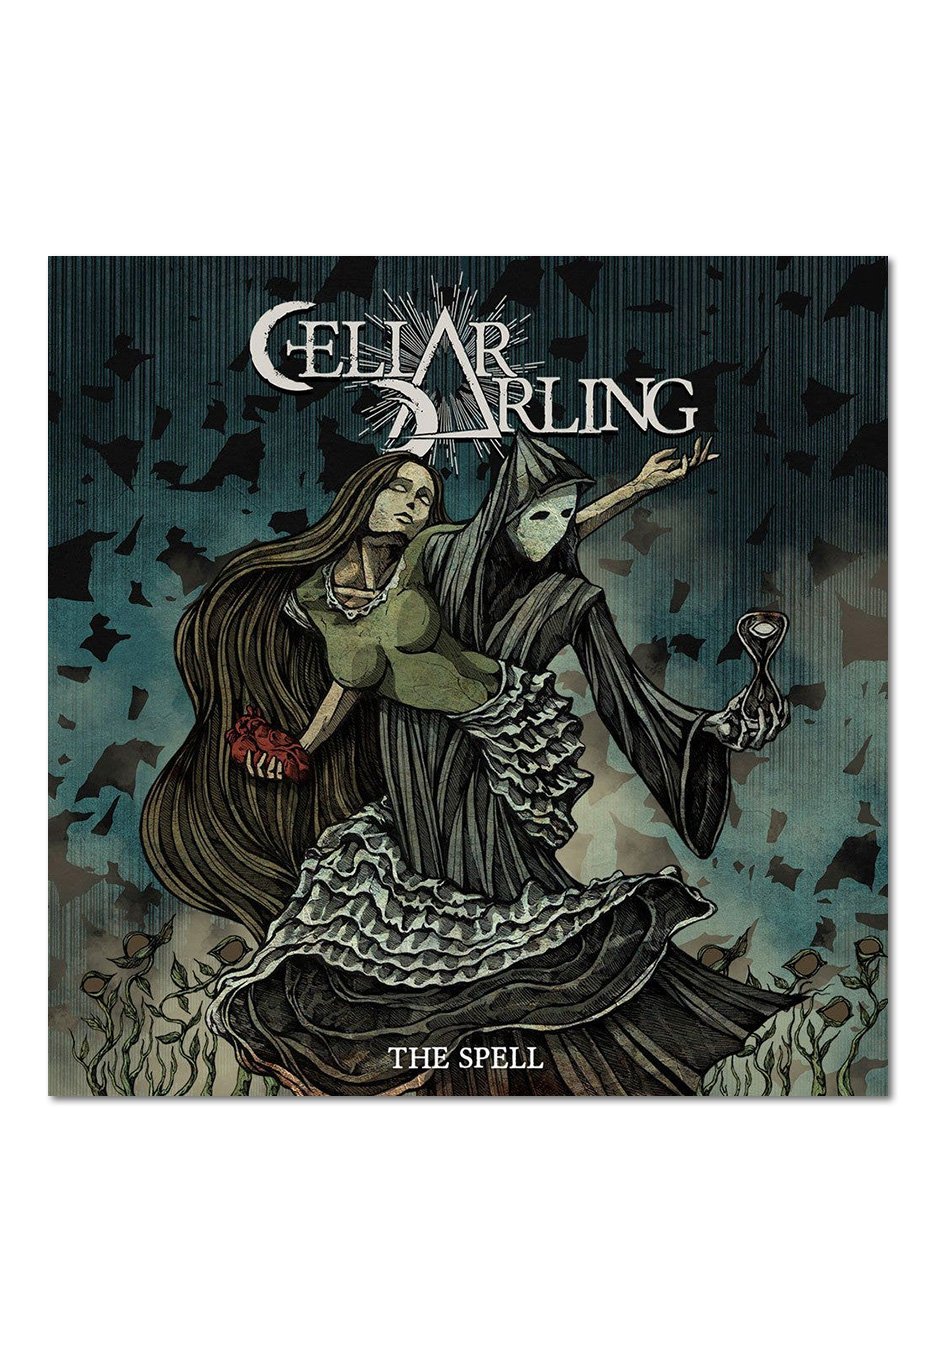 Cellar Darling - The Spell - CD